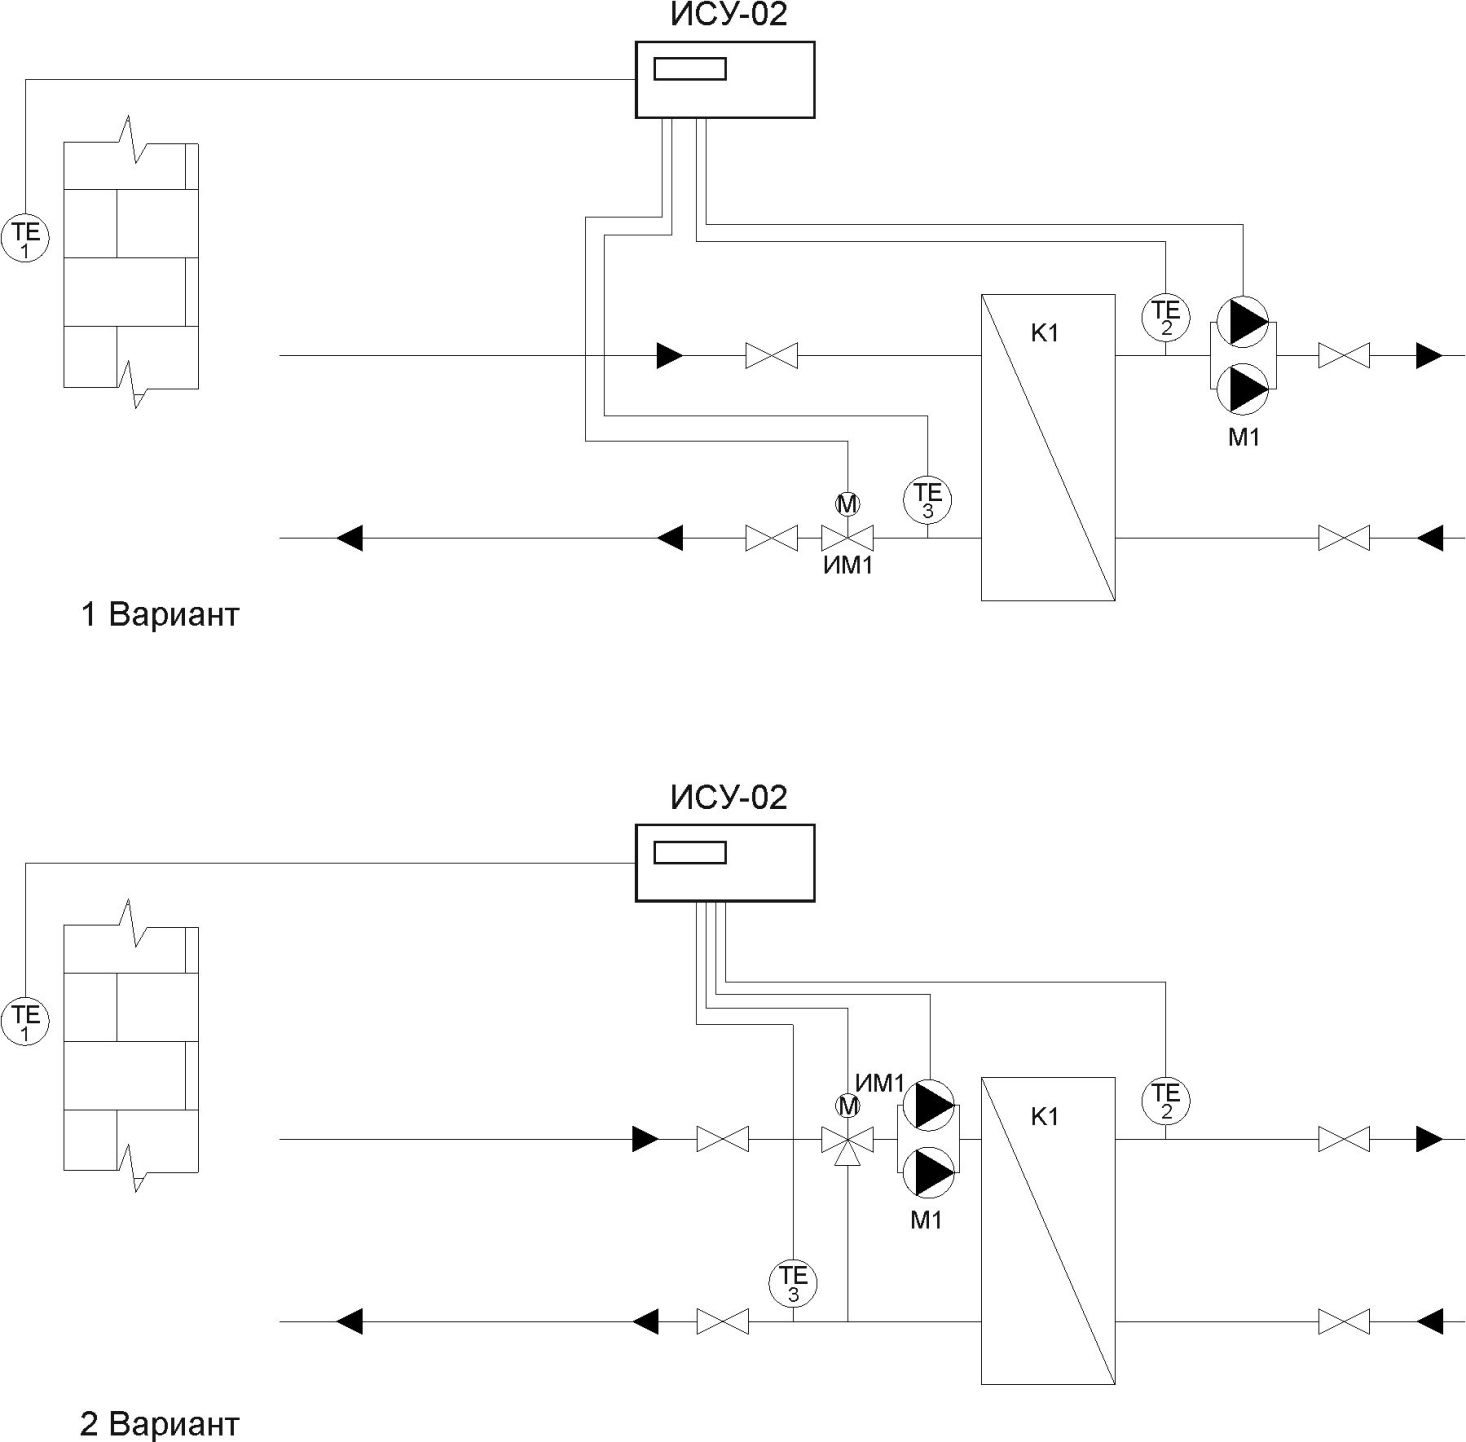 Схема построения теплового пункта на ИСУ-02